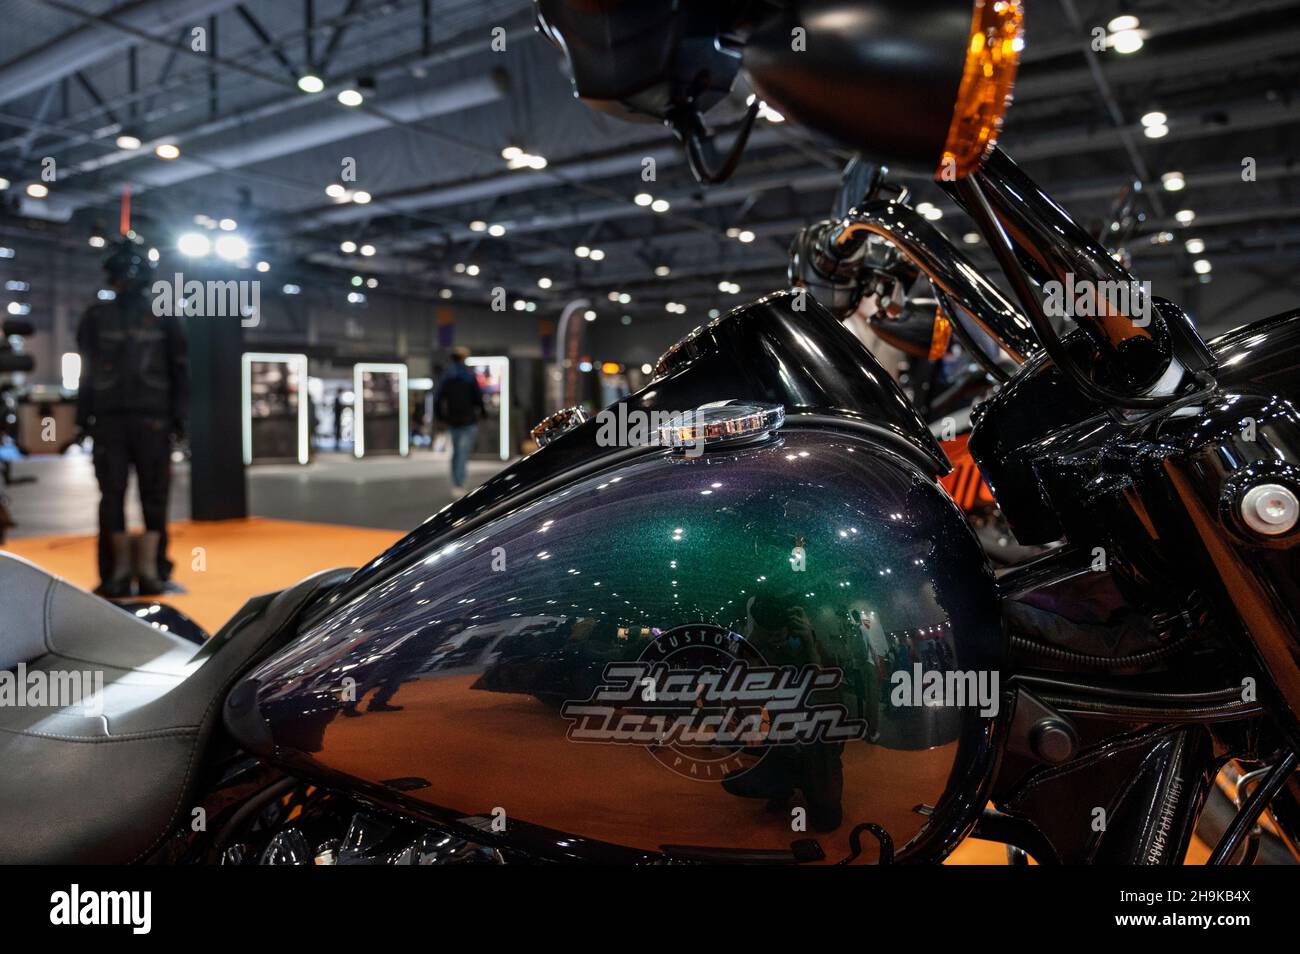 Le fabricant américain de motos, Harley-Davidson moto et le logo vus sur le stand de l'entreprise lors de l'International Motor Expo (IMXHK) présentant des voitures et motos thermiques et électriques à Hong Kong.(Photo de Budrul Chukrut / SOPA Images/Sipa USA) Banque D'Images